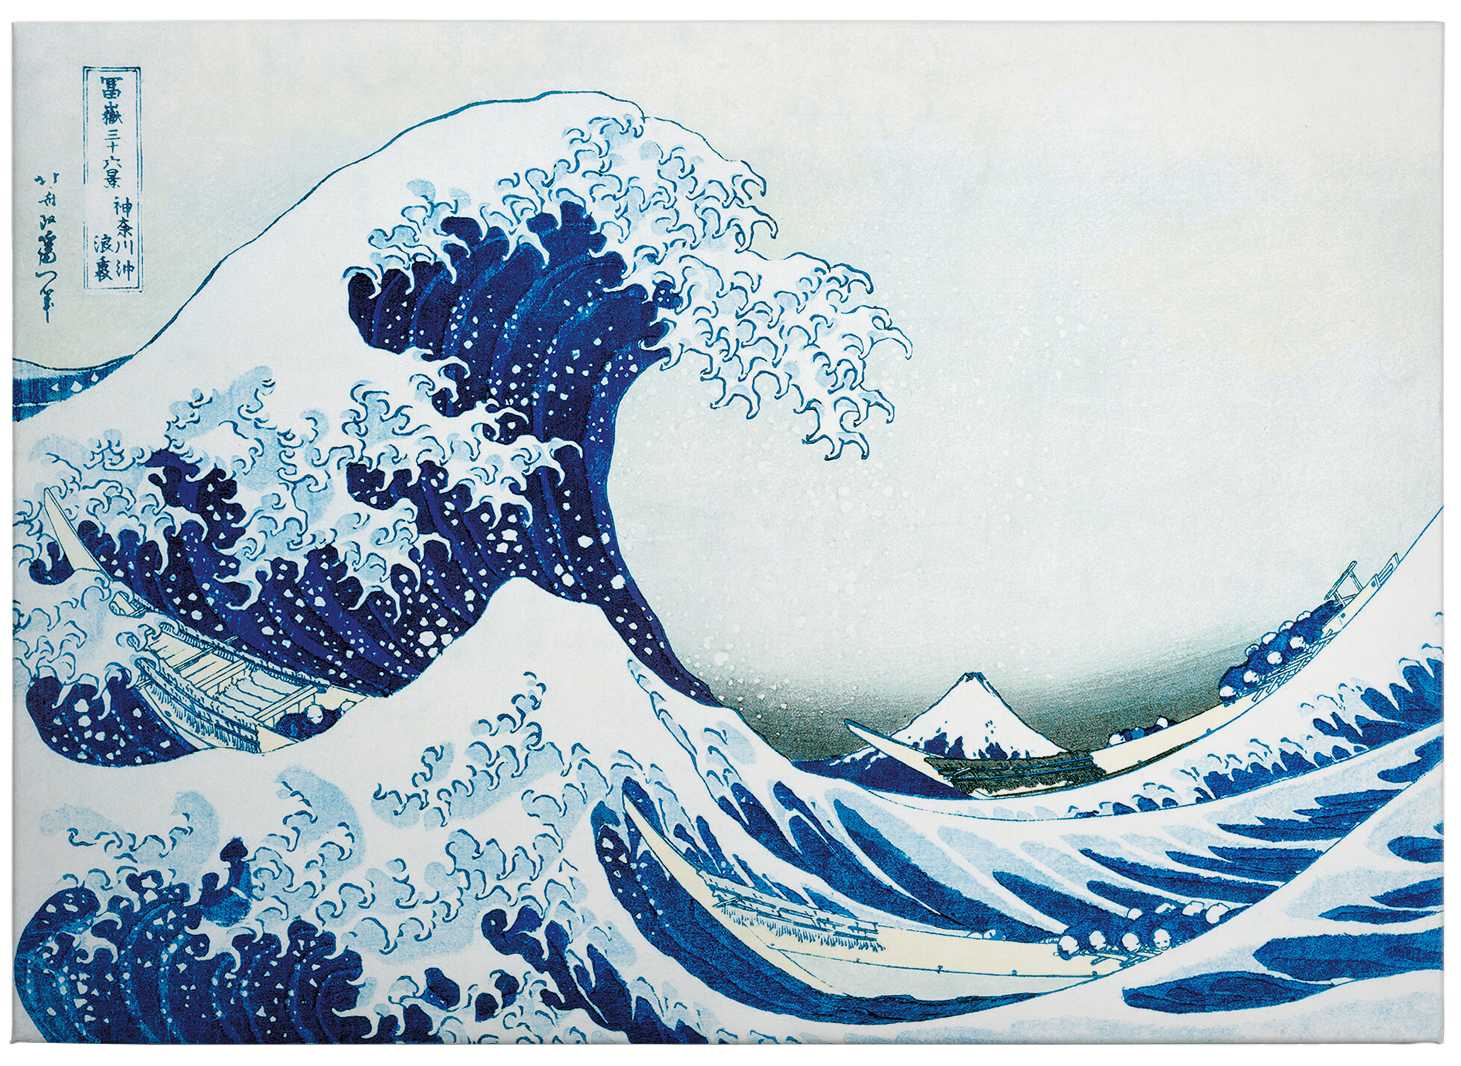             Leinwandbild "Die große Welle bei Kanagawa" von Hokusai – 0,70 m x 0,50 m
        